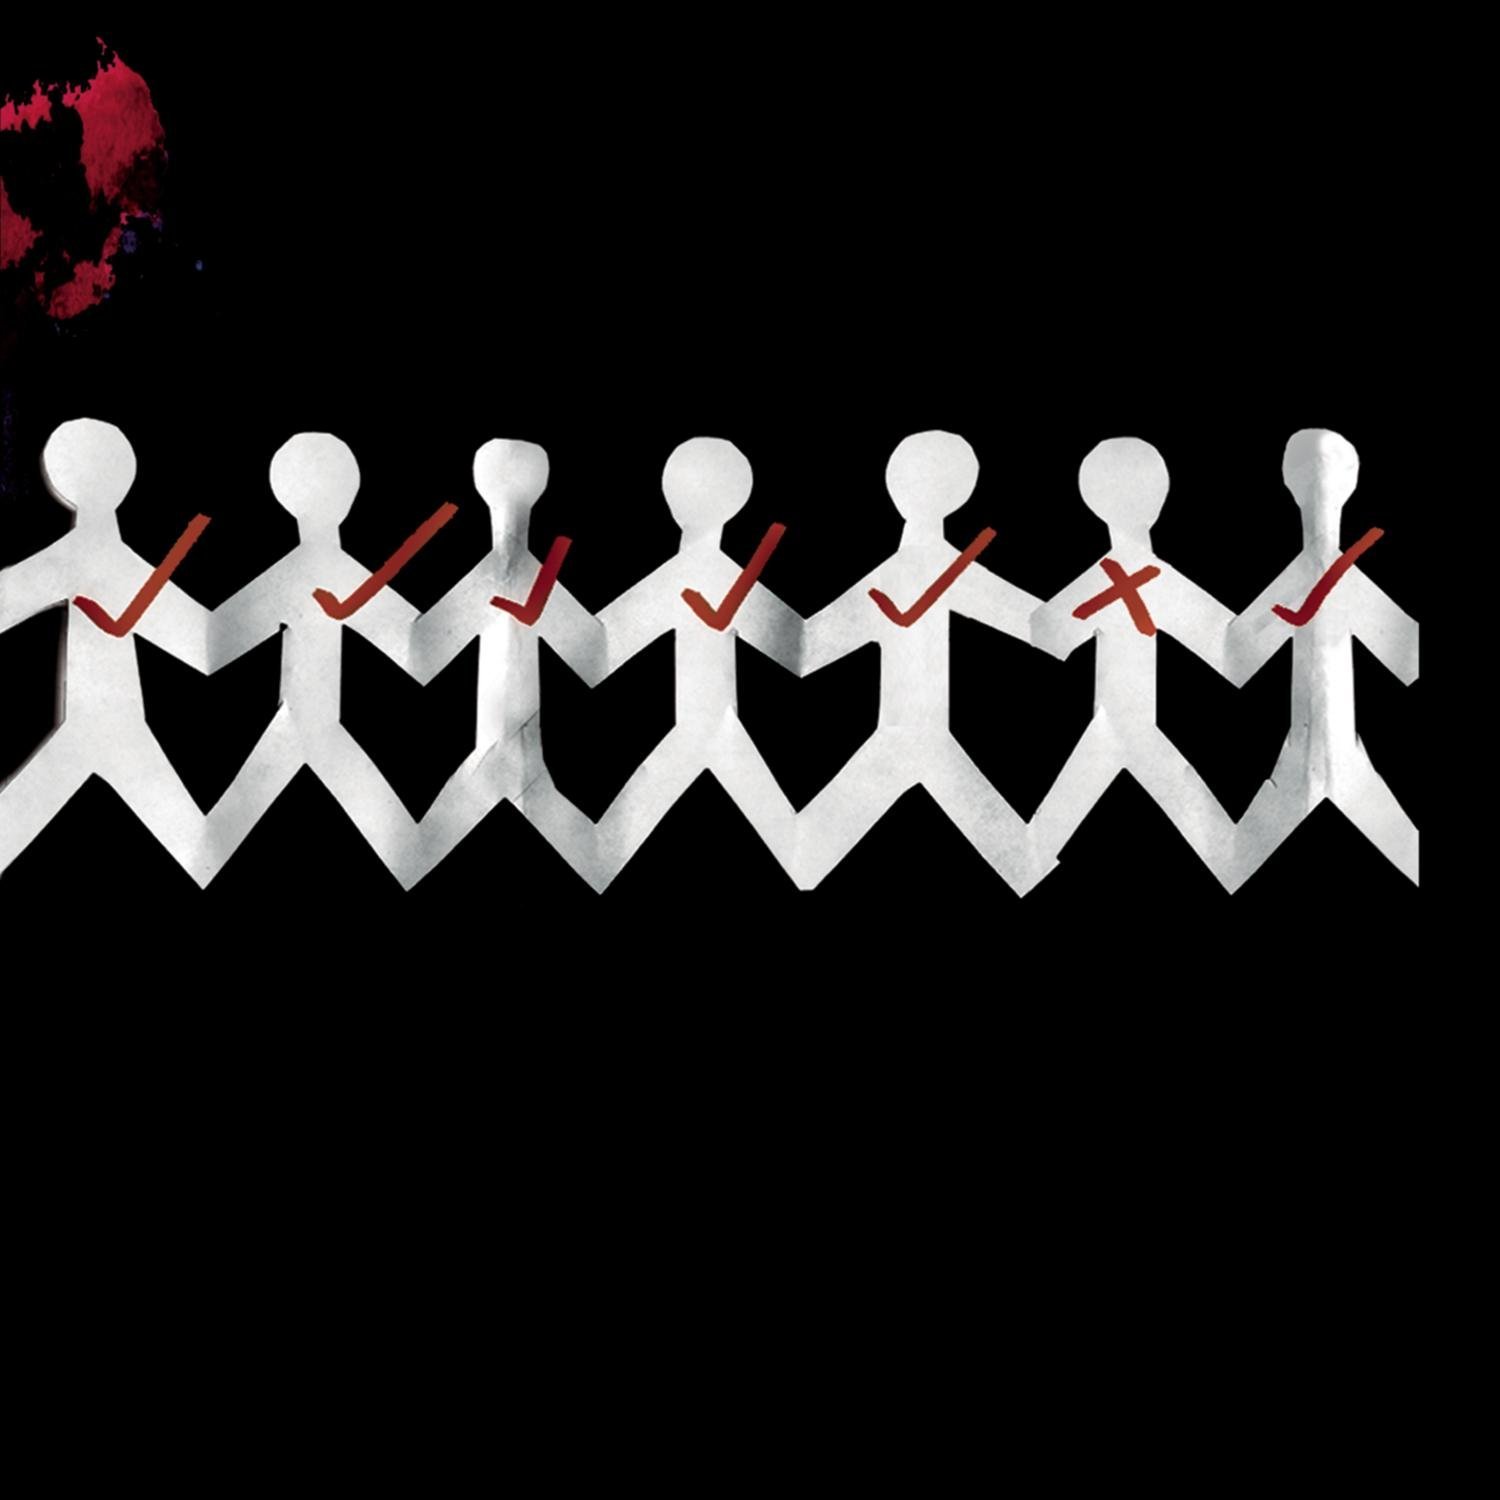 Three Days Grace - One-X (2006) Album Info